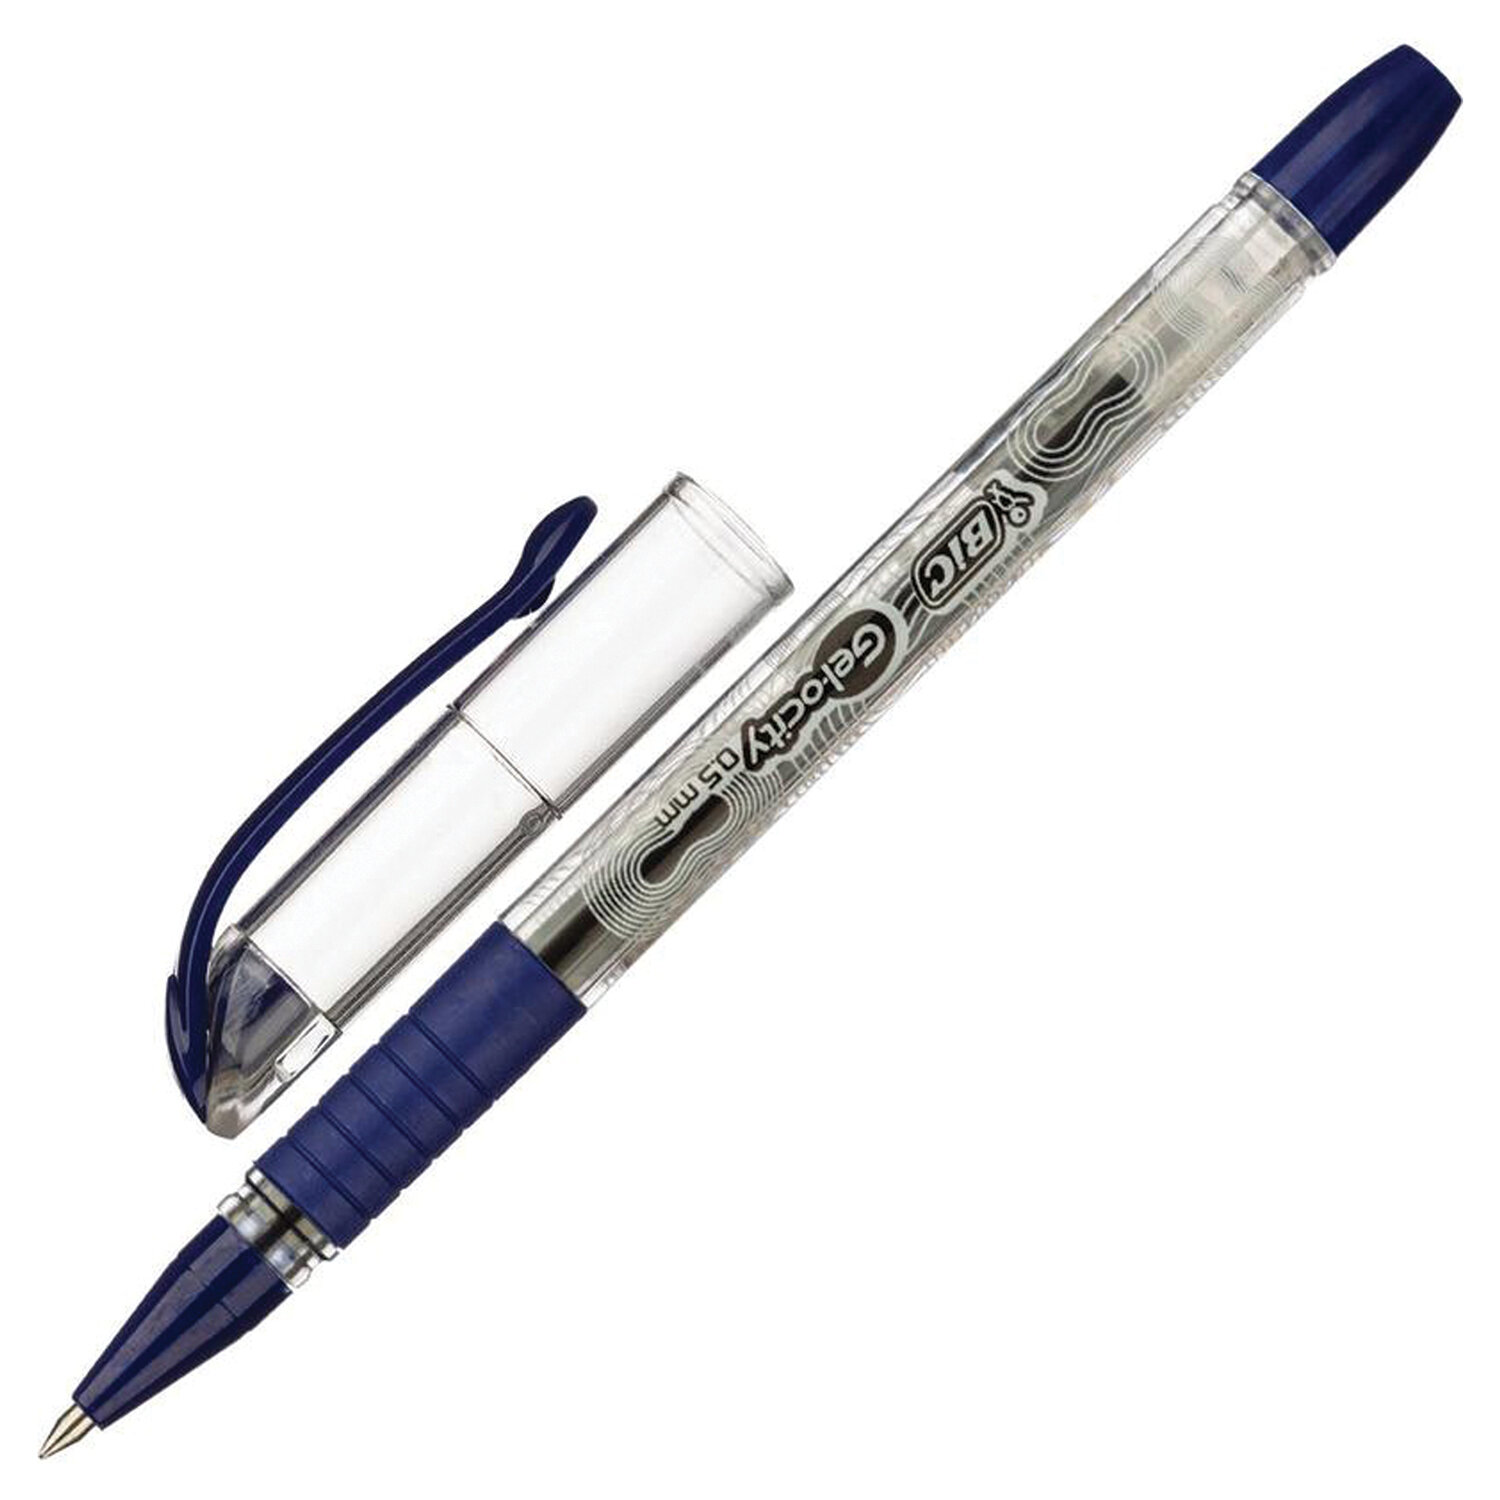 Письма 0 5 мм. Ручка гелевая черная Gelocity BIC. Ручка гелевая BIC Gelocity Stic. Ручка гелевая черная BIC. Ручка гелевая автоматическая BIC "Gelocity" 0,7 мм, грип, синяя.